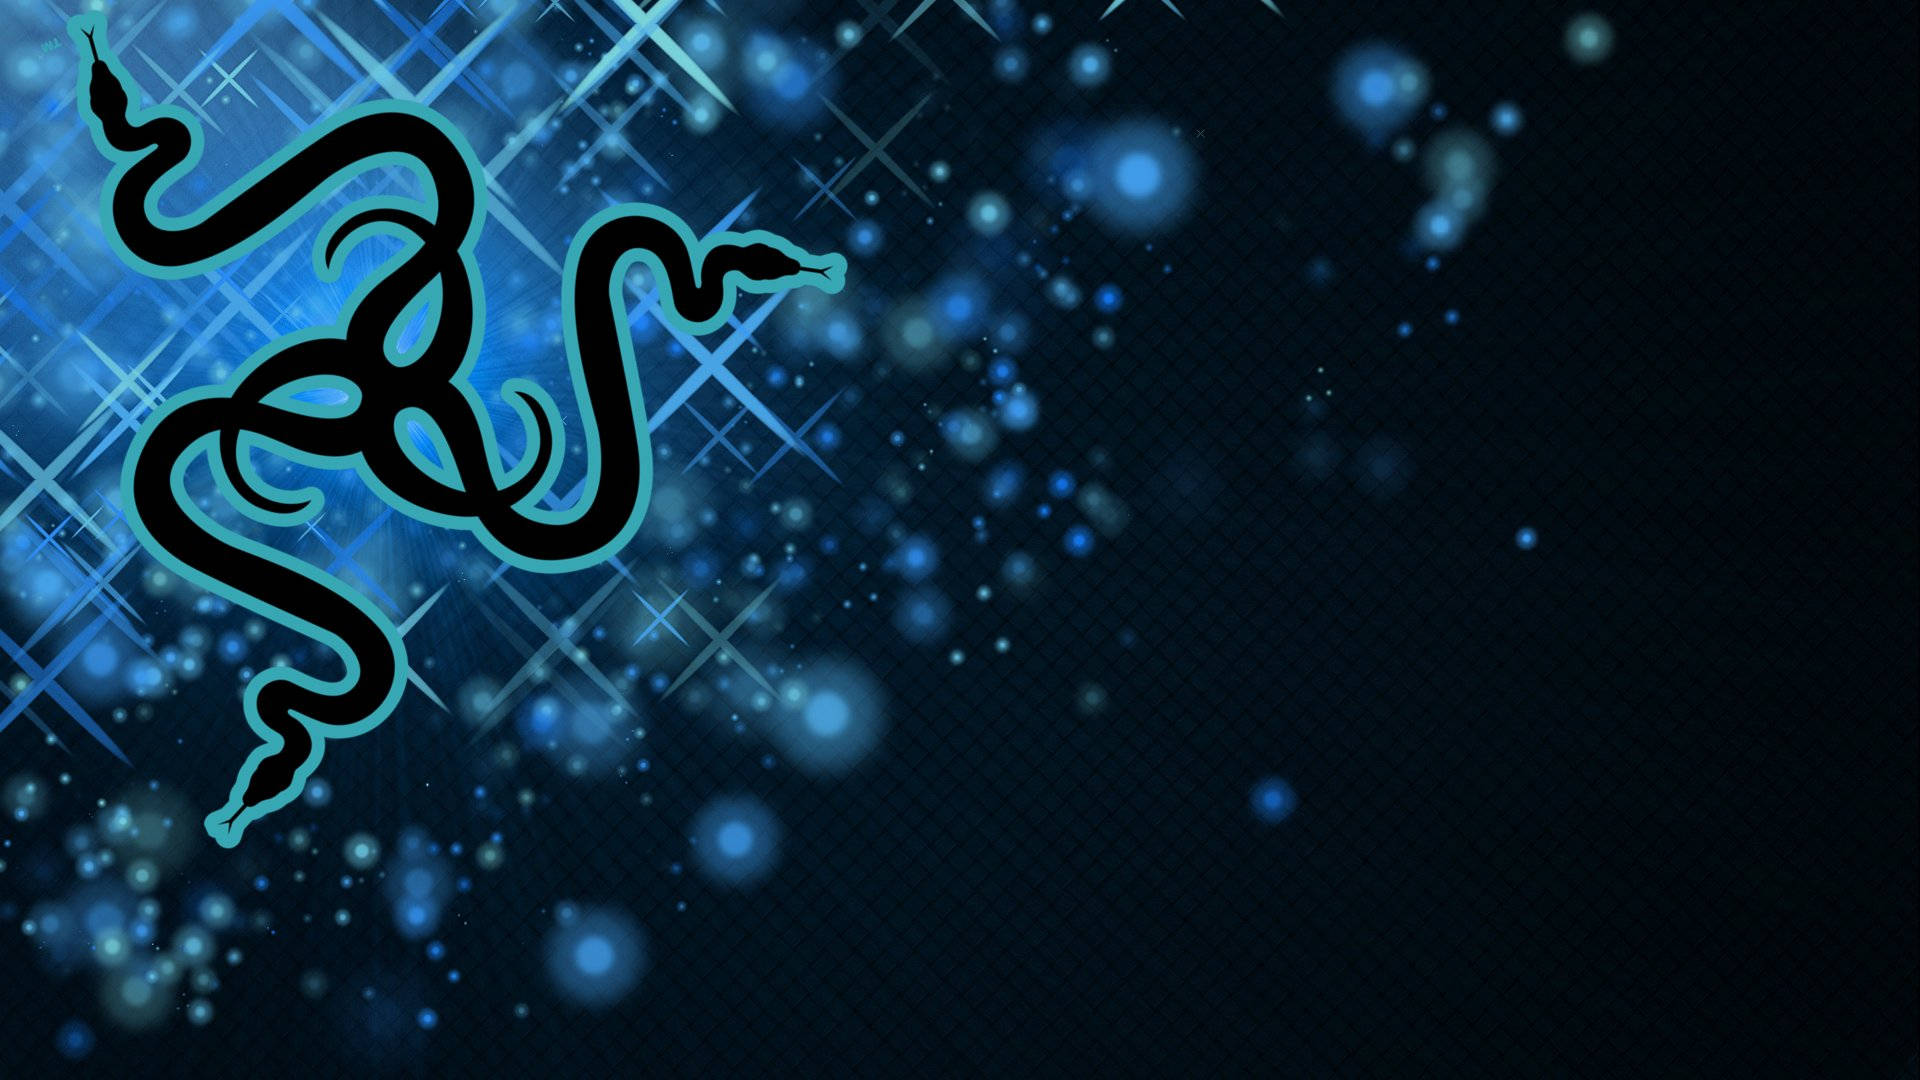 Razer Pc Logo With Blue Sparkles Background